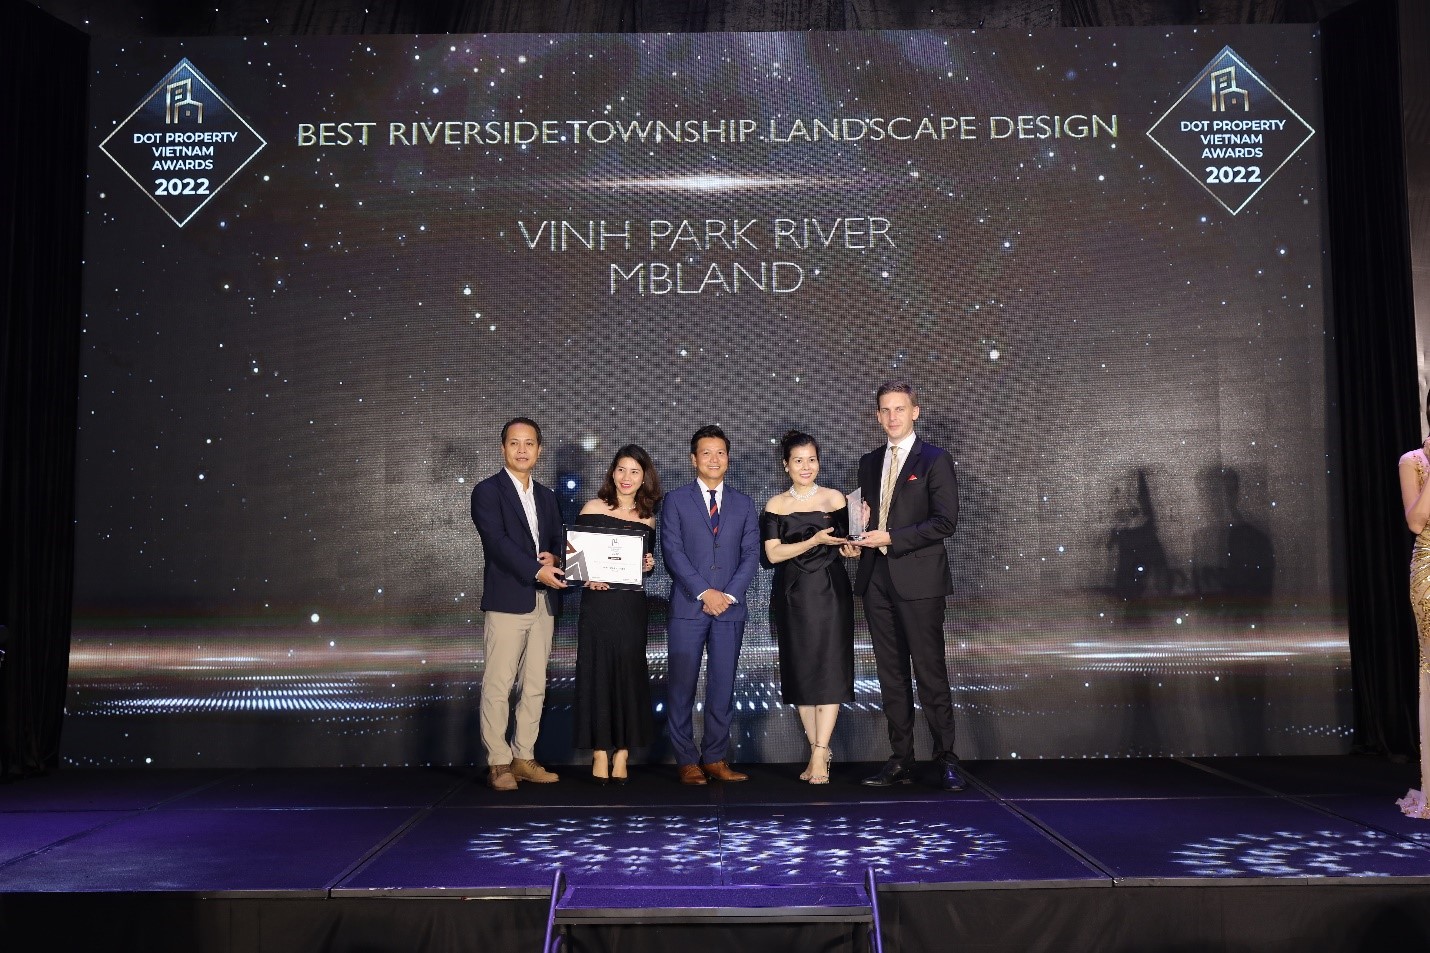 Vinh Park River – Khu đô thị ven sông có thiết kế cảnh quan đẹp nhất Việt Nam 2022